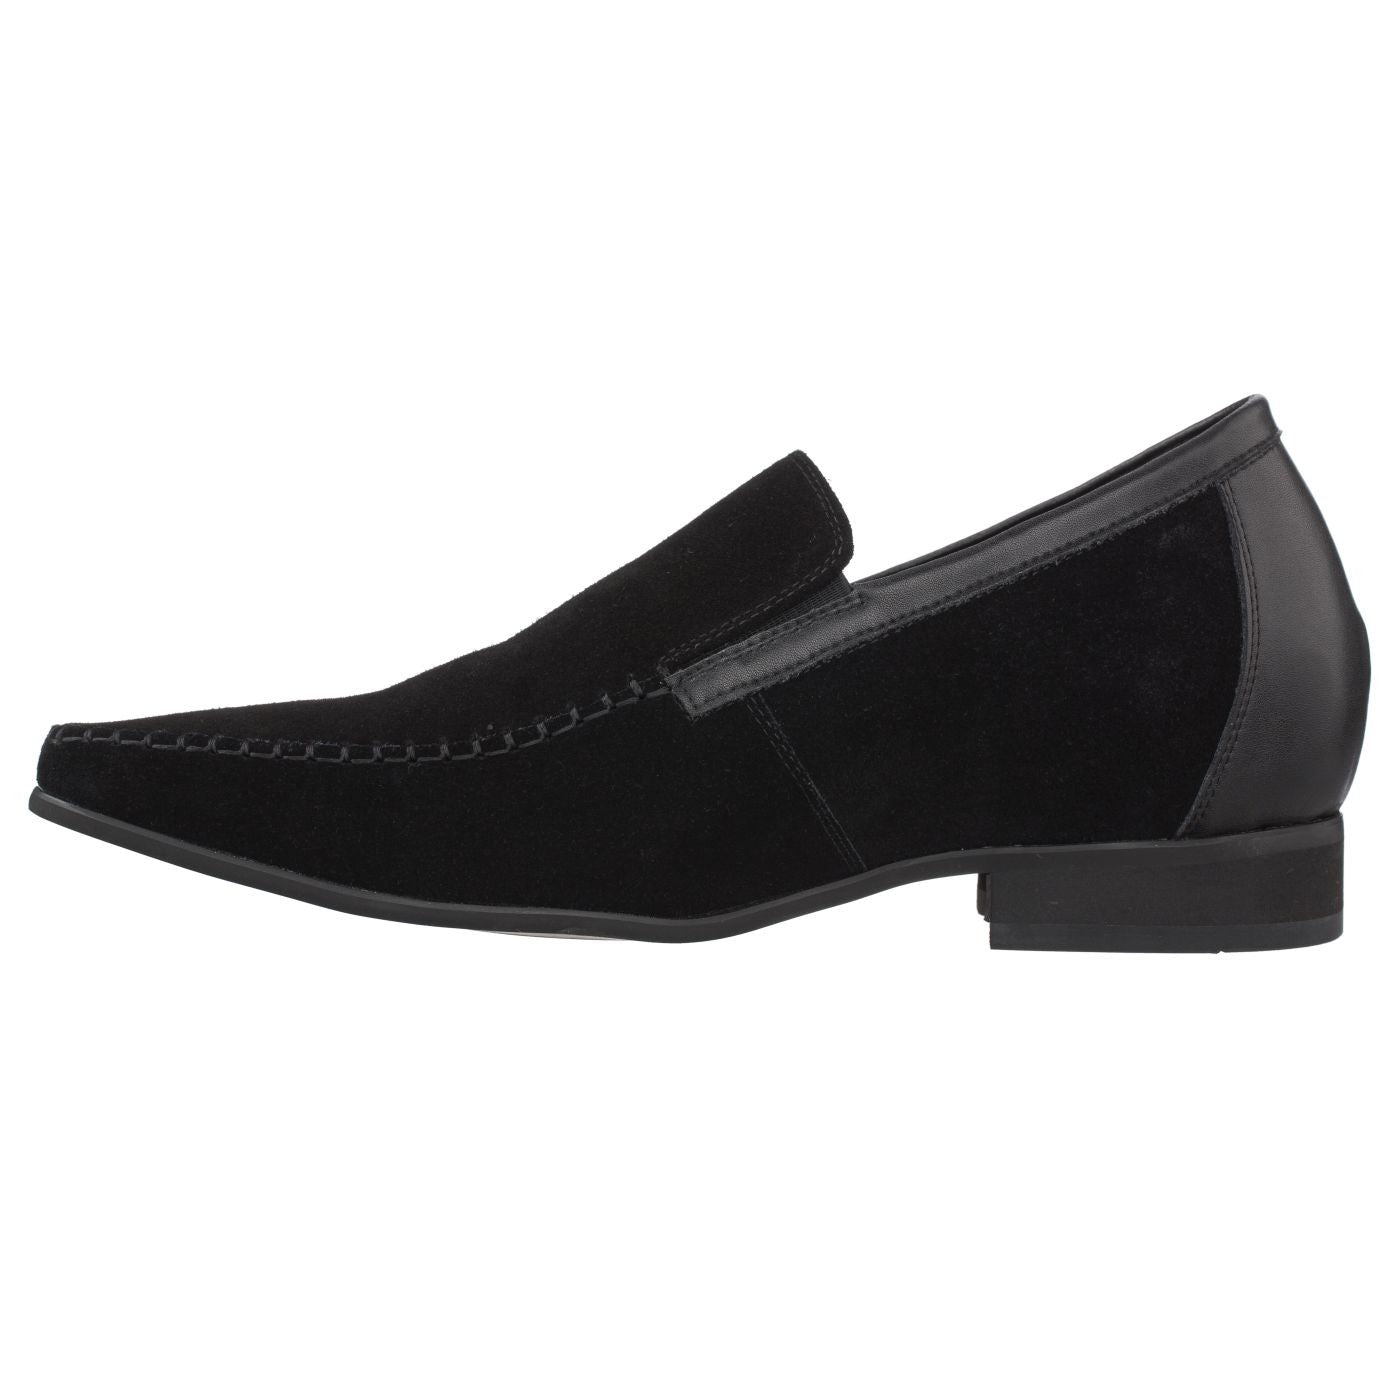 CALTO Nubuck Leather Dress Loafers - TallMenShoes.com – Tallmenshoes.com